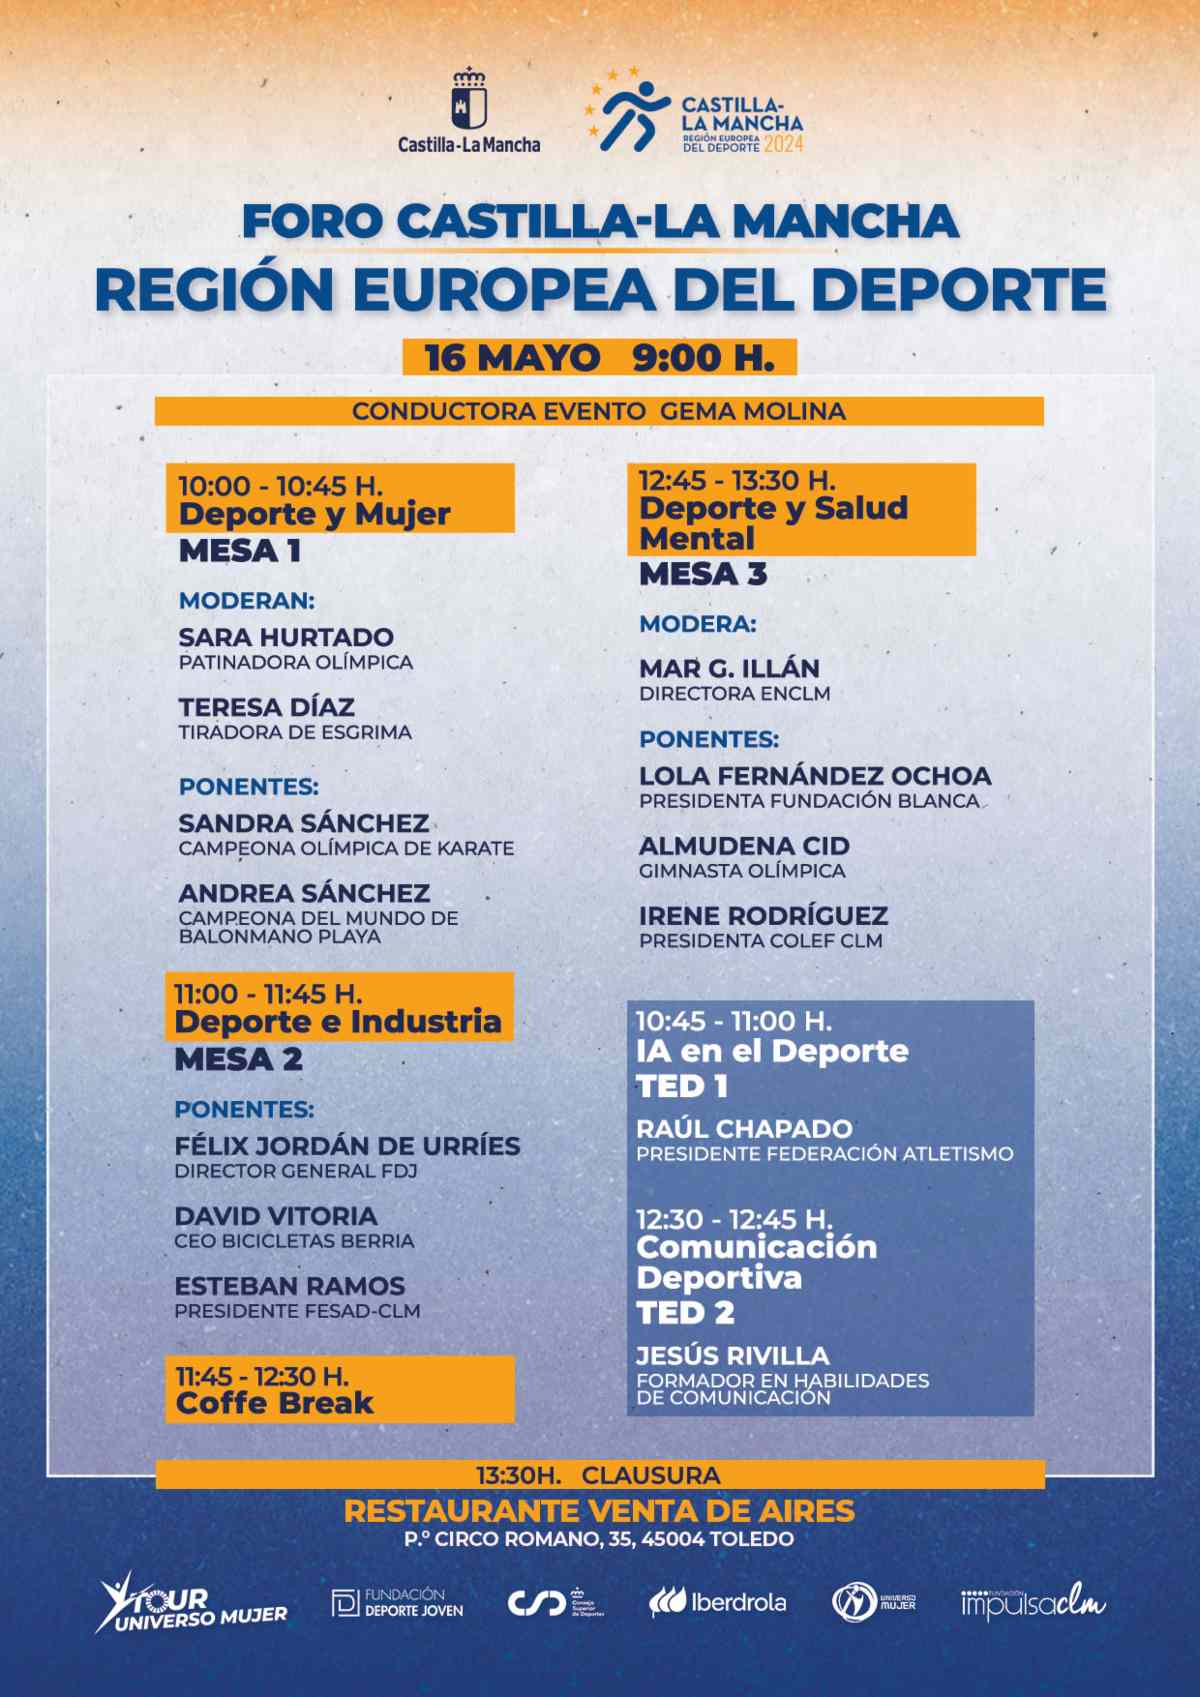 Foro Castilla-La Mancha Región Europea del Deporte.